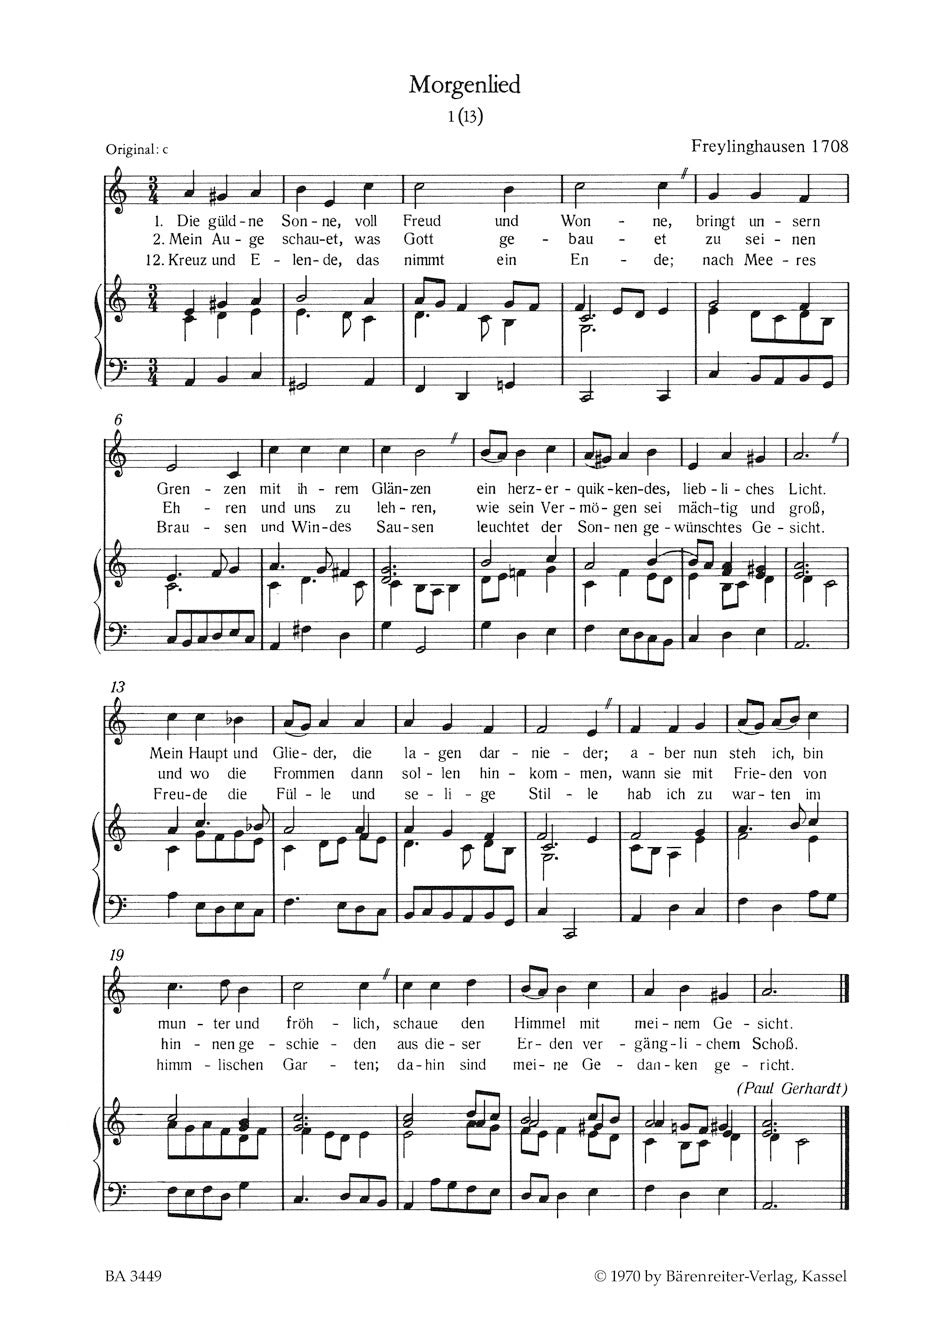 Bach Die Gesänge zu G.Chr.Schemellis Gesangbuch und 6 Lieder aus dem Klavierbüchlein für Anna Magdalena BWV 439-507, 511-514, 516, 517 -Ausgabe für tiefe Singstimme (Originallage)-